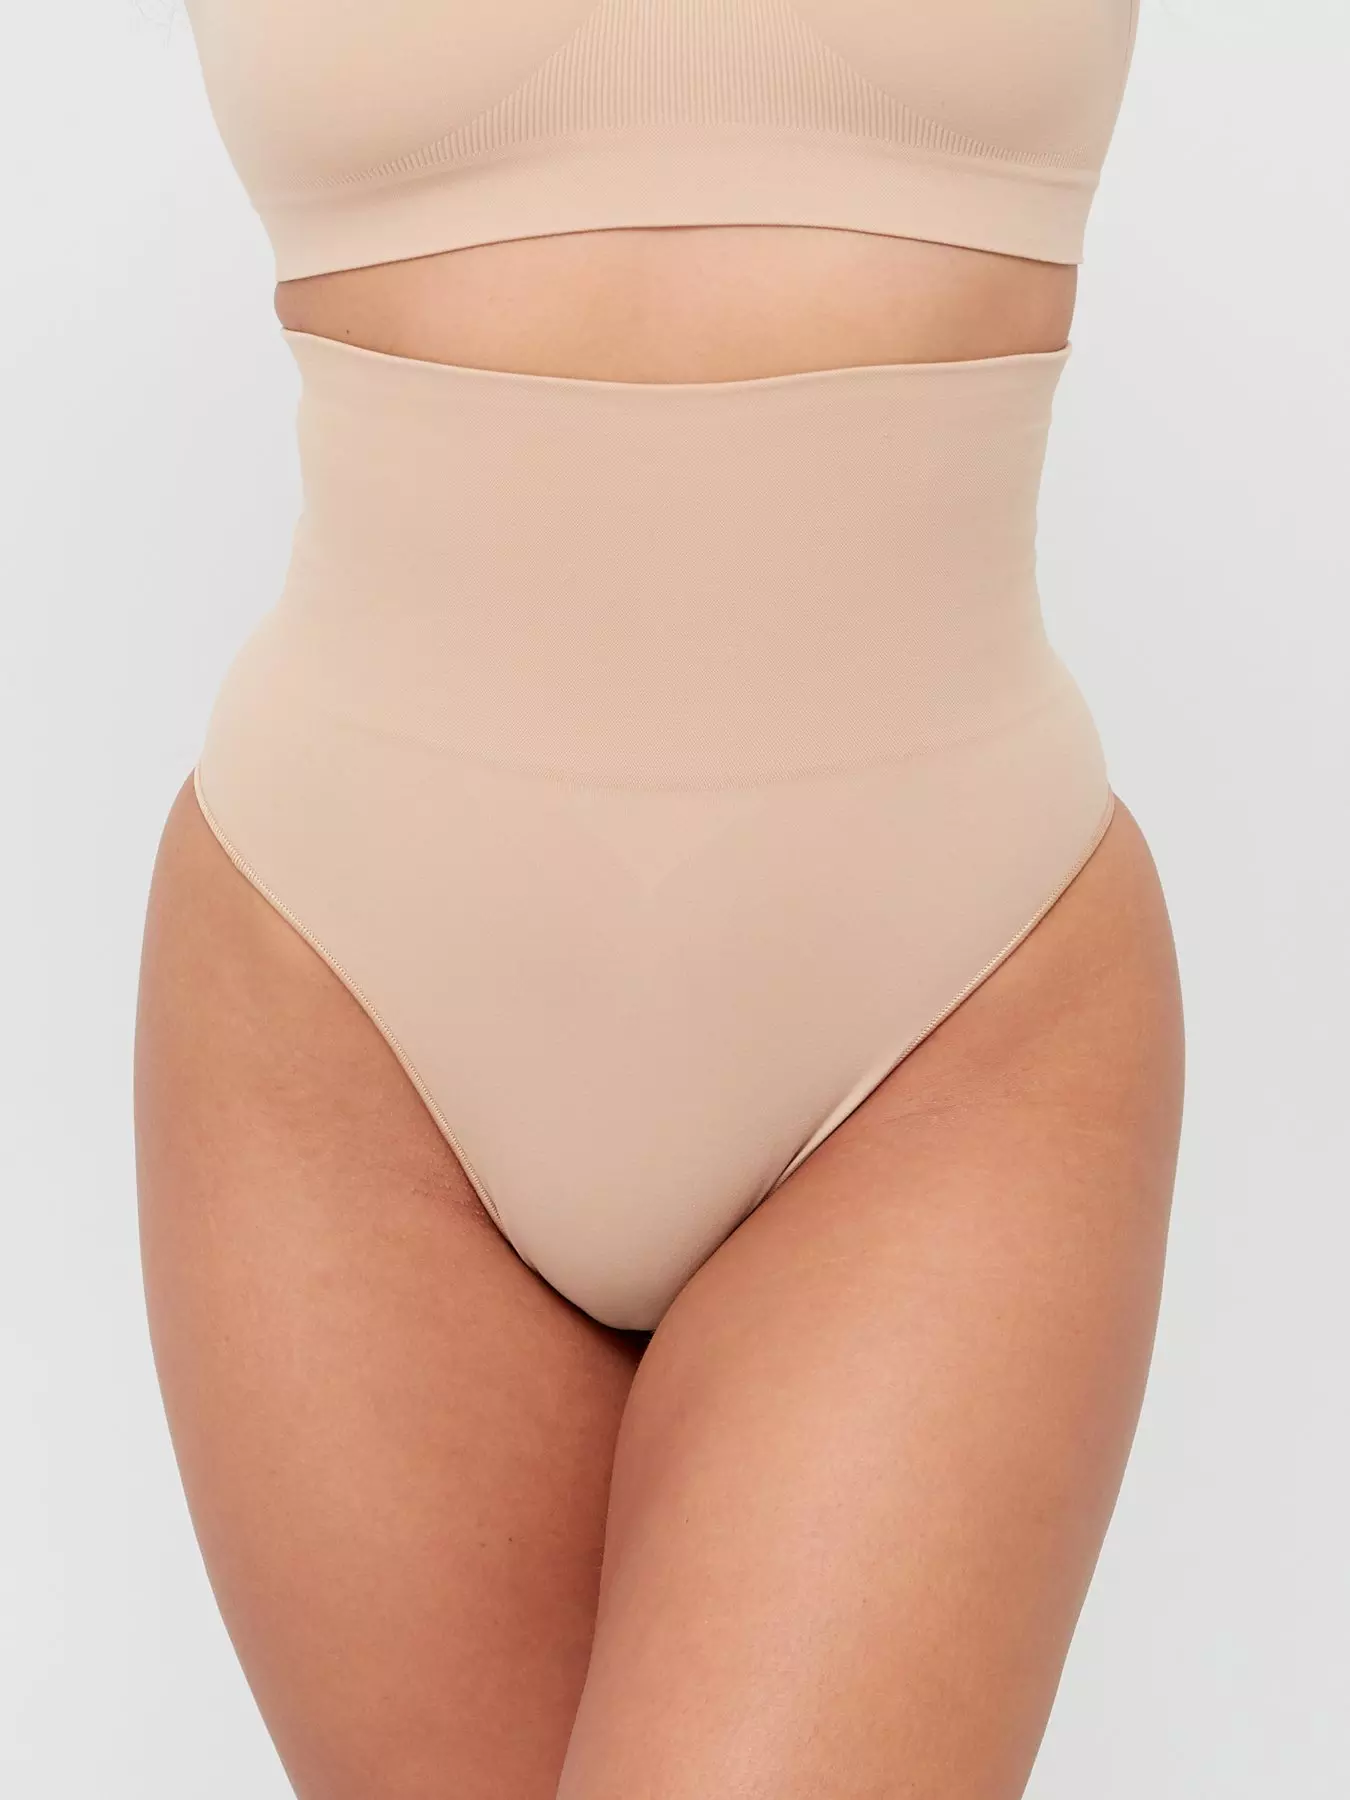 Spdoo Women Waist Trainer Tummy Control Panties Body Shaper High Waisted  Shapewear Briefs Butt Lifter Slimming Corset Seamless 